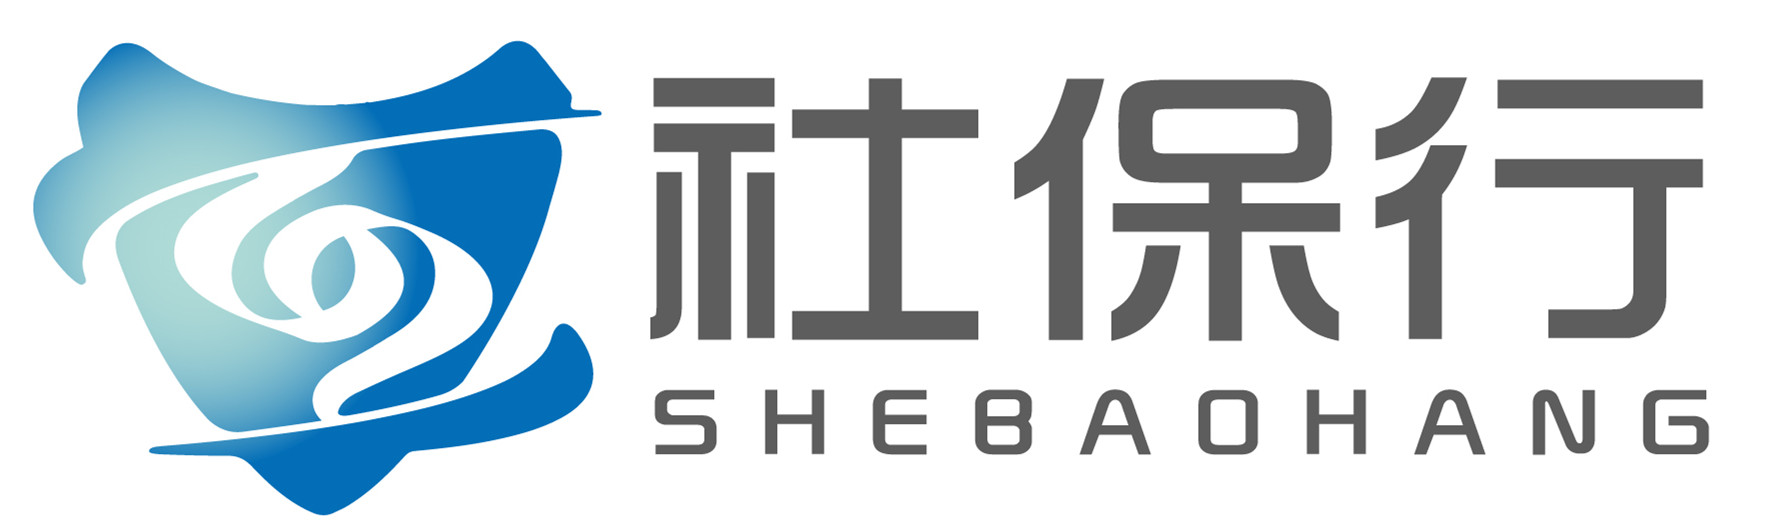 01 社保行 Logo JPG.jpg